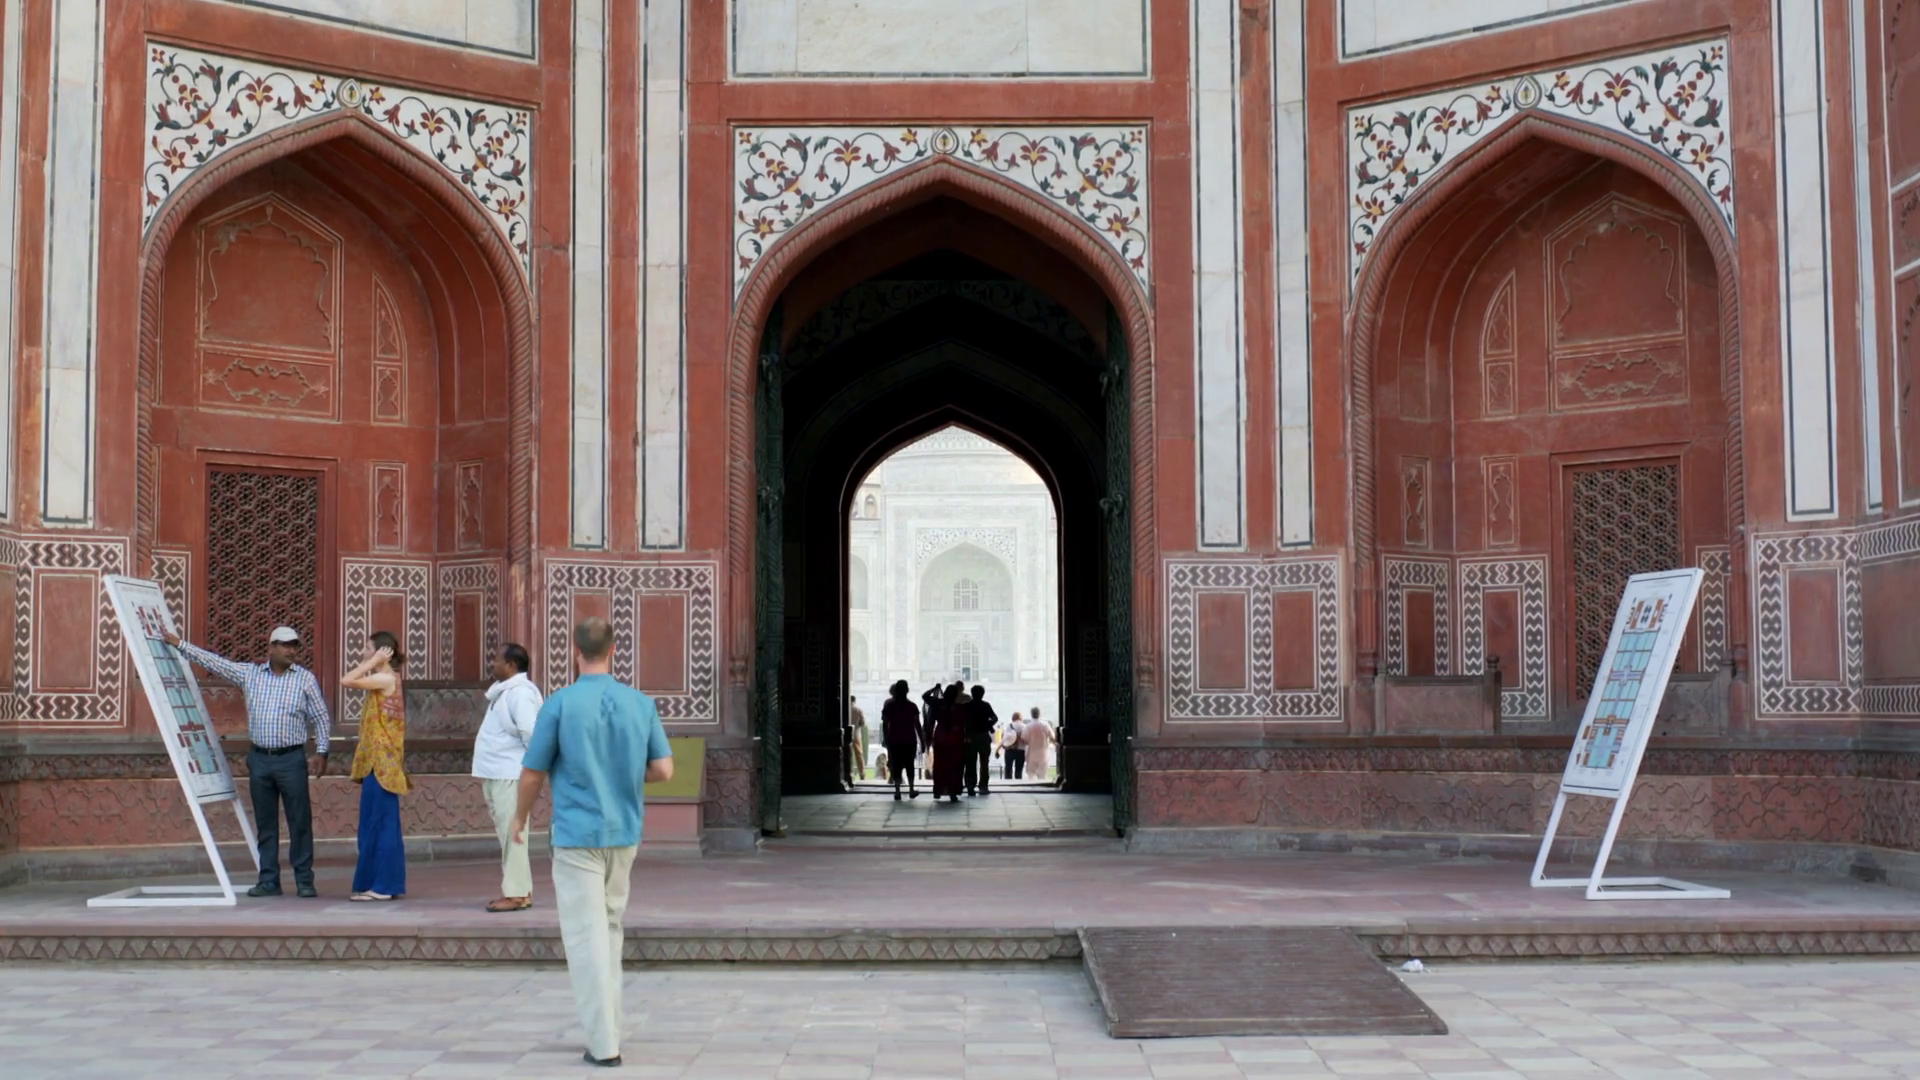 Cổng chính của đền Taj Mahal có các dòng chữ pishtaq được viết trên cửa, thiết kế đối xứng to nhỏ để du khách nhìn vào sẽ thấy bằng nhau.